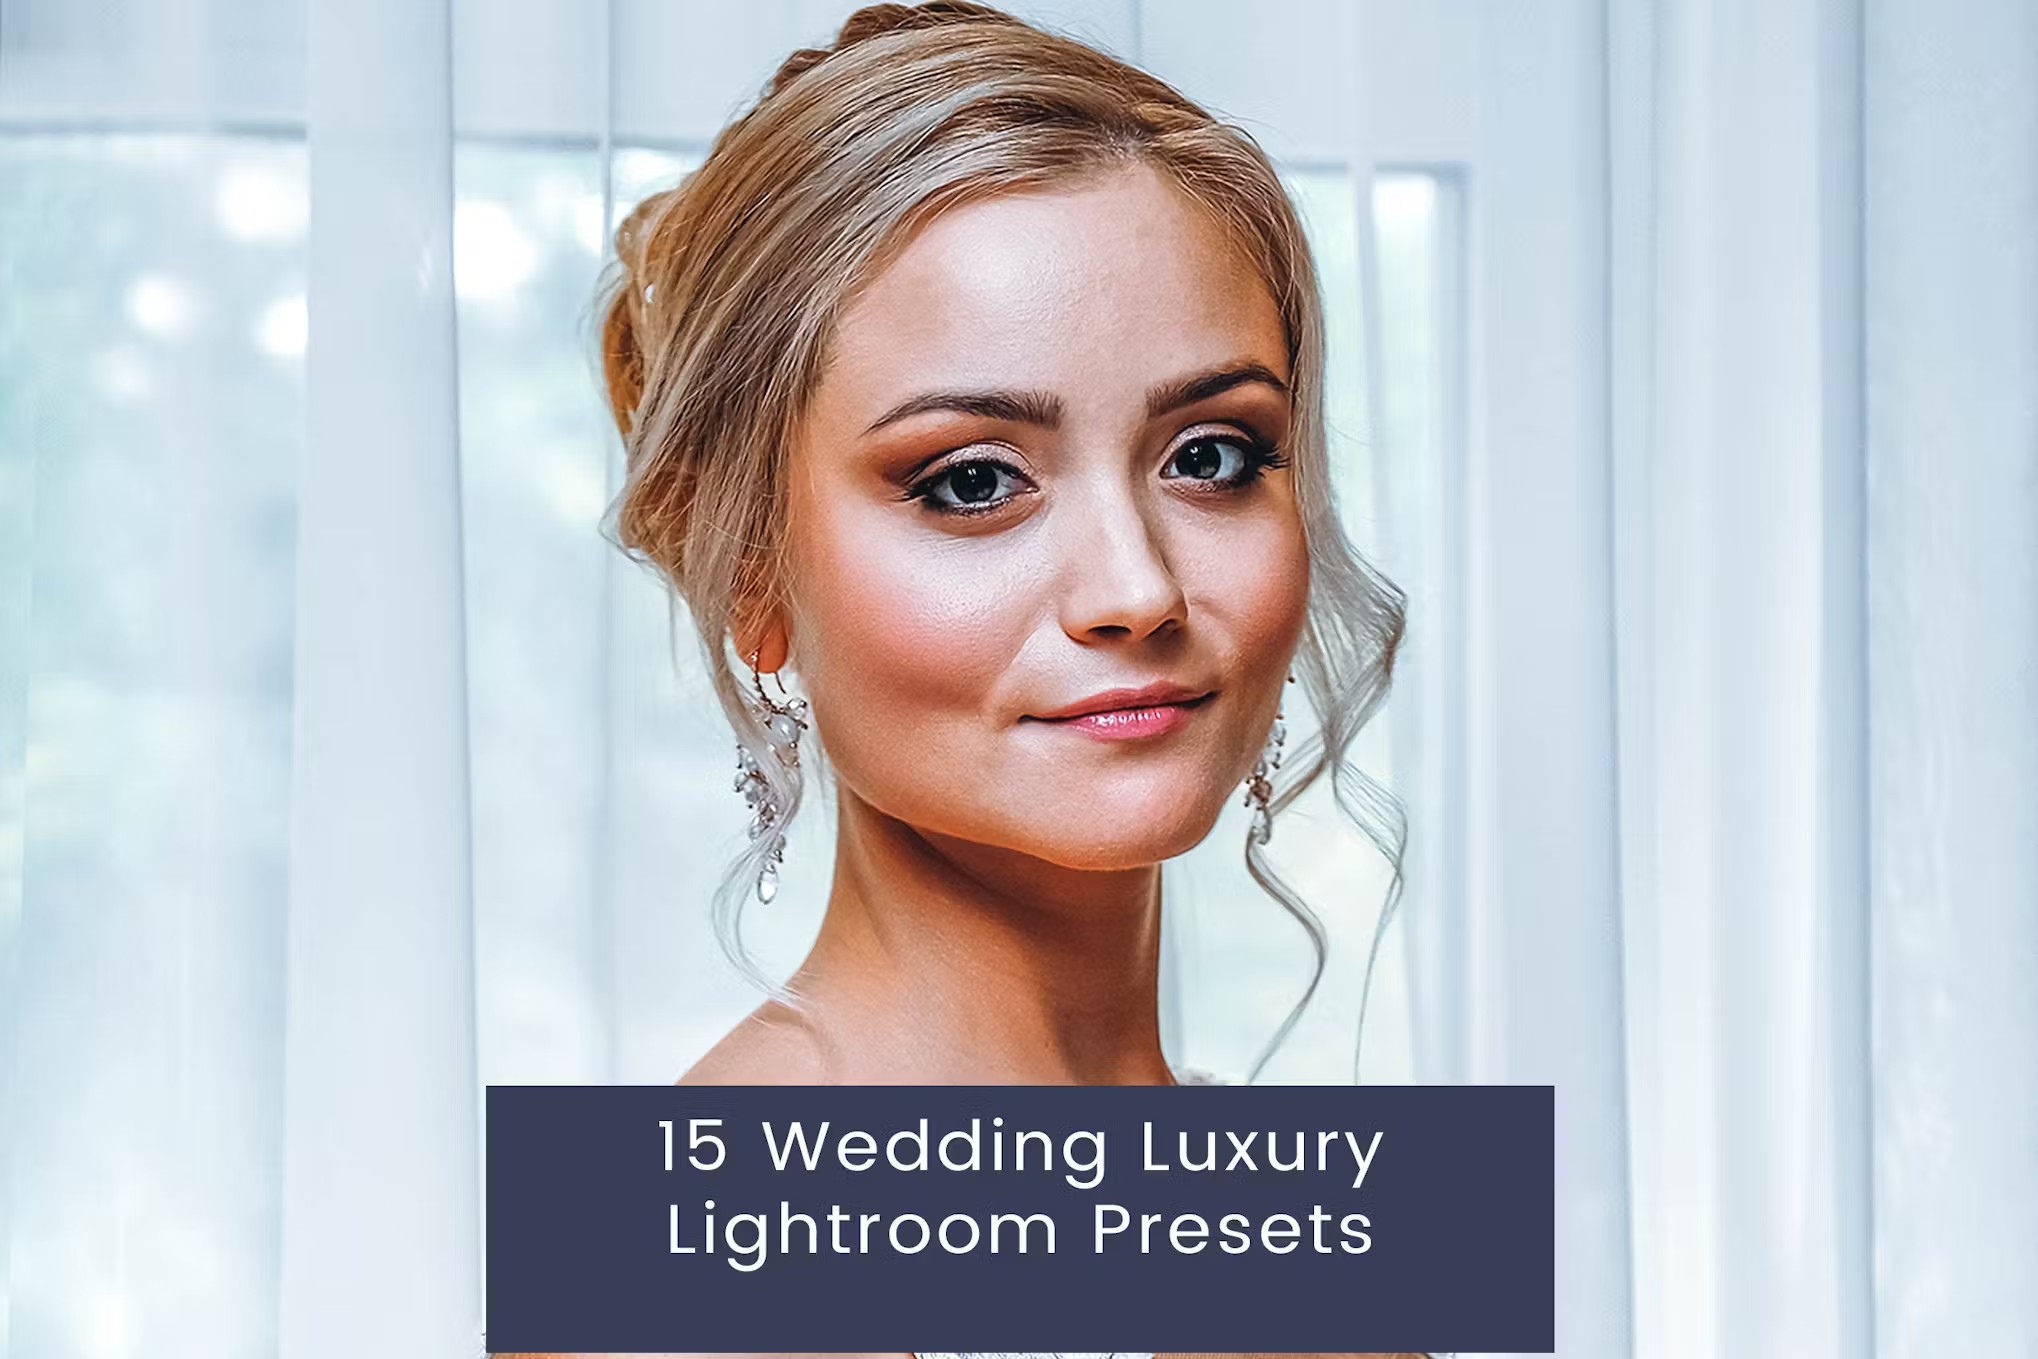 豪华婚礼电影复古旅拍摄影后期调色Lightroom预设 15 luxuriöse Lightroom Presets für Hochzeiten 插件预设 第1张